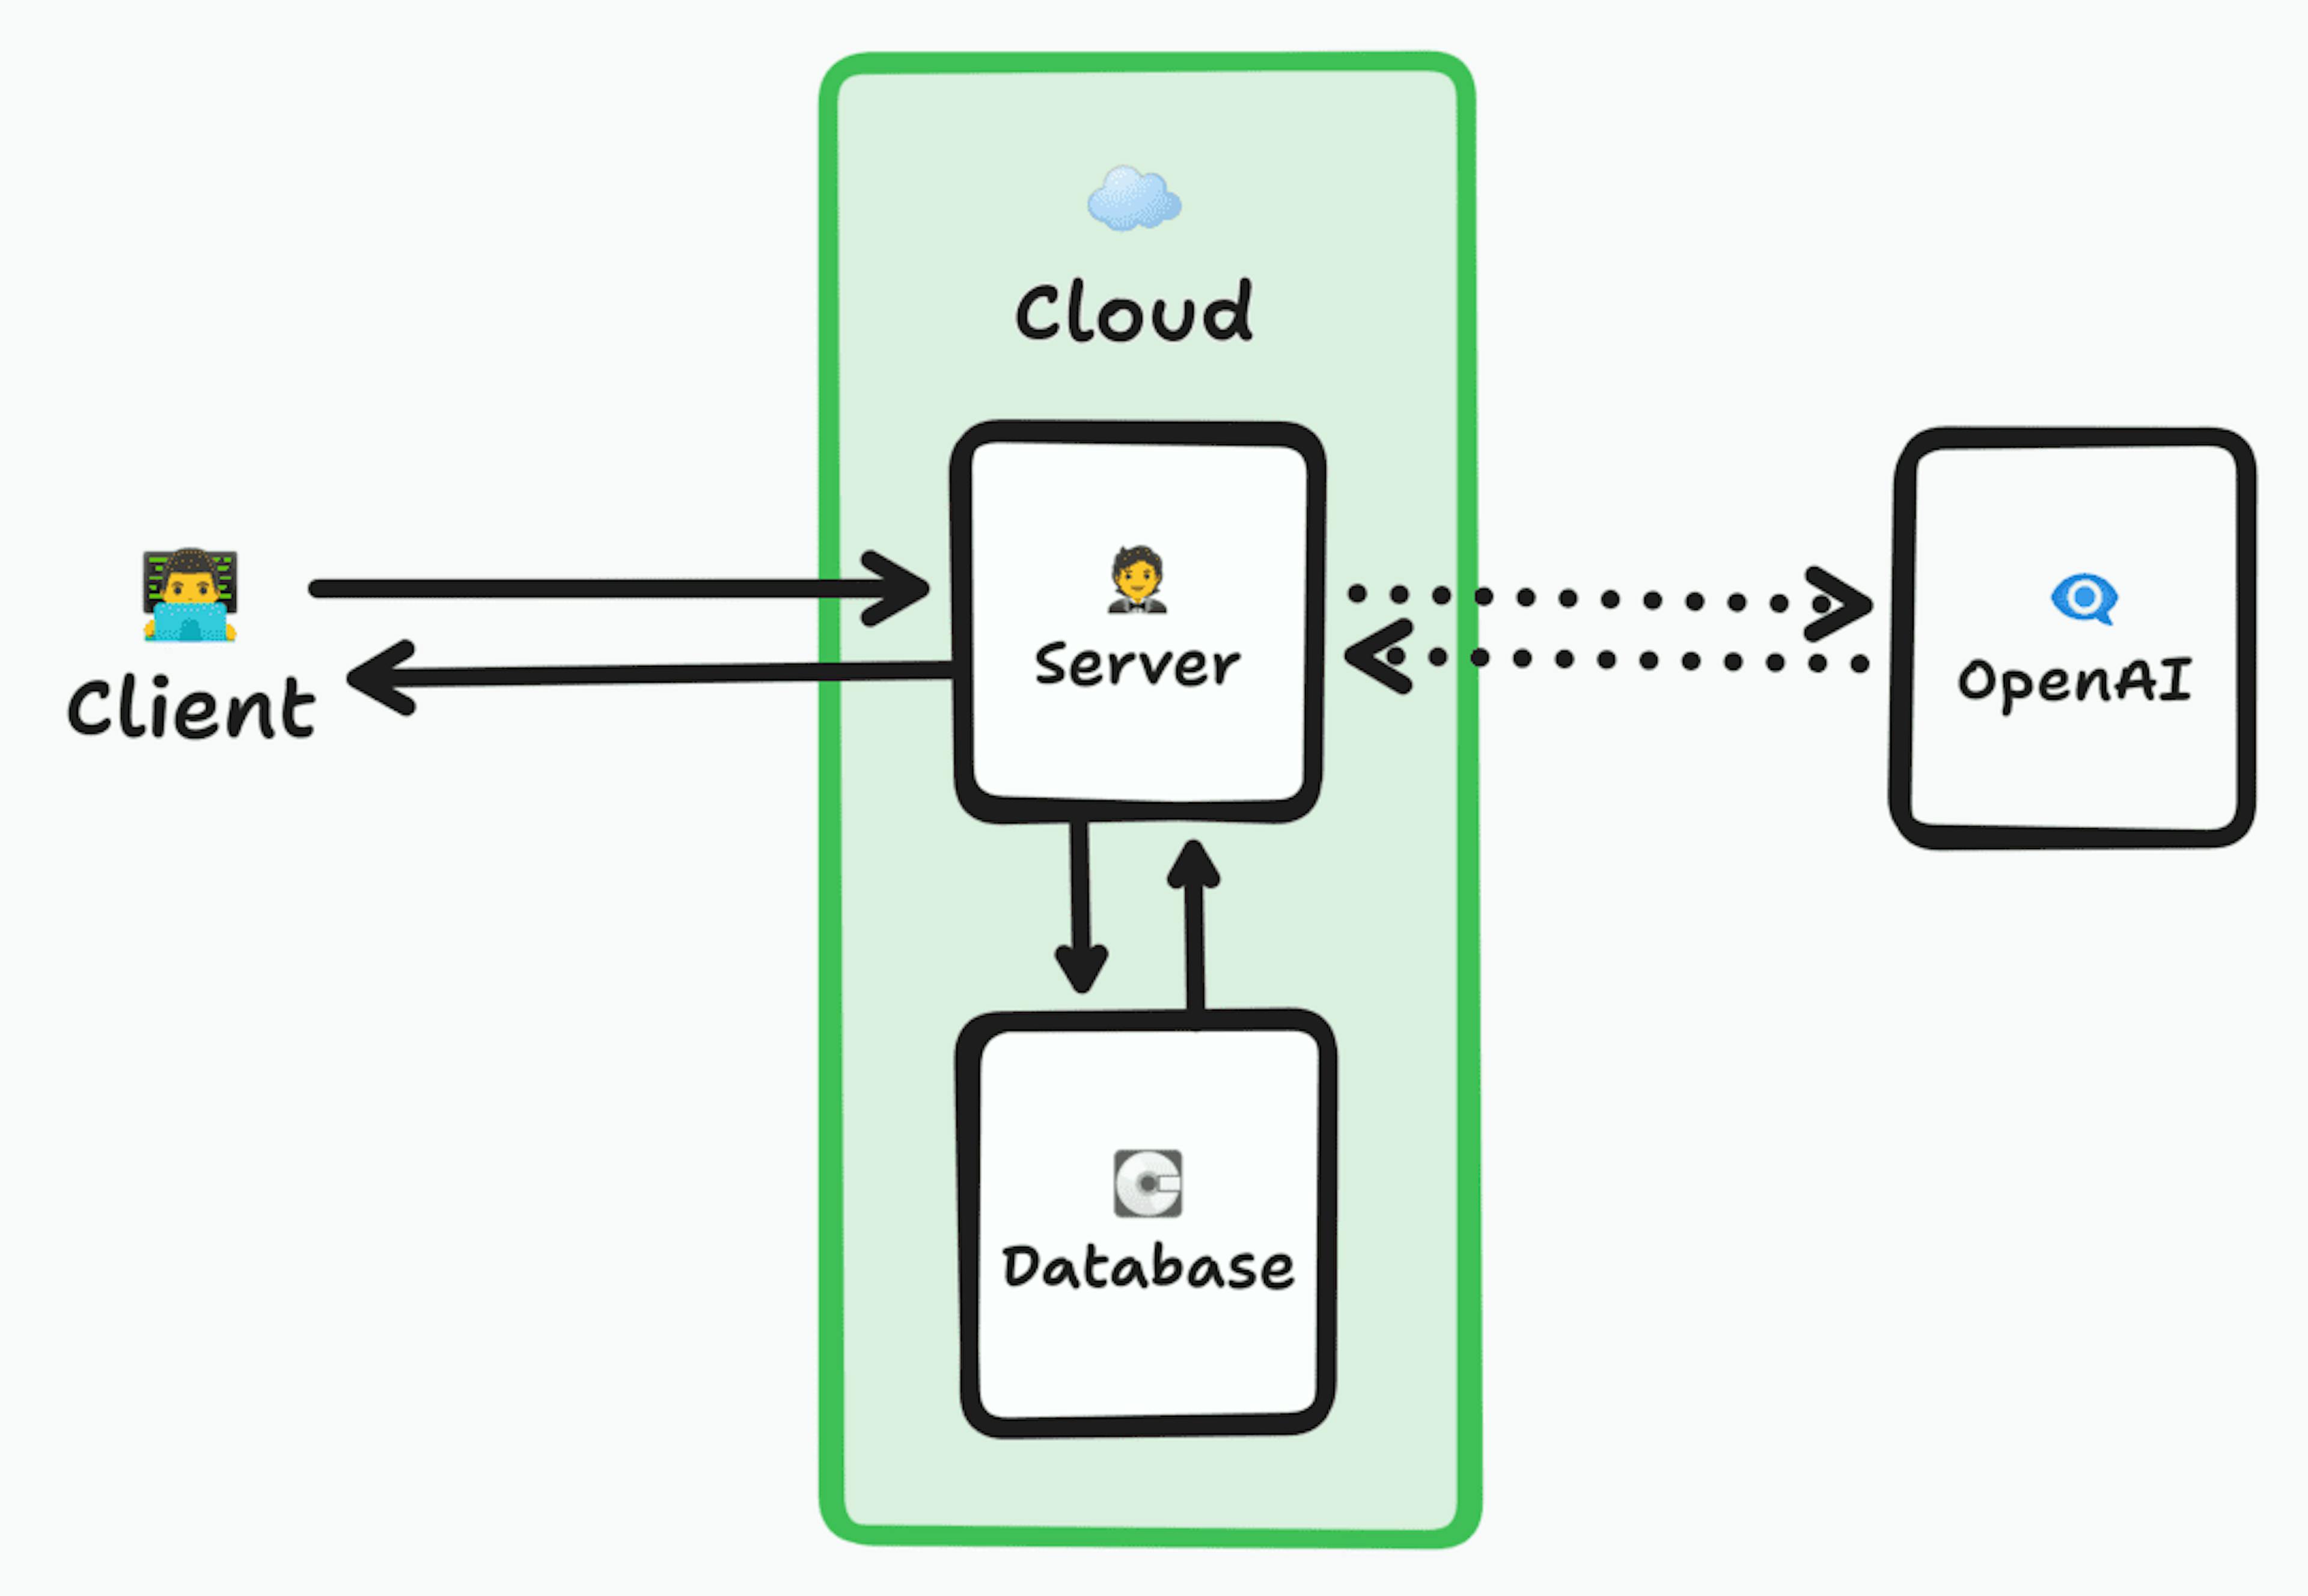 Architekturdiagramm, das einen Client zeigt, der eine Verbindung zu einem Server in der Cloud herstellt, der nach Daten in einer Datenbank sucht, die Anfrage dann optional an OpenAI weiterleitet, um die Ergebnisse zu erhalten, und die Daten dann an den Client zurückgibt.